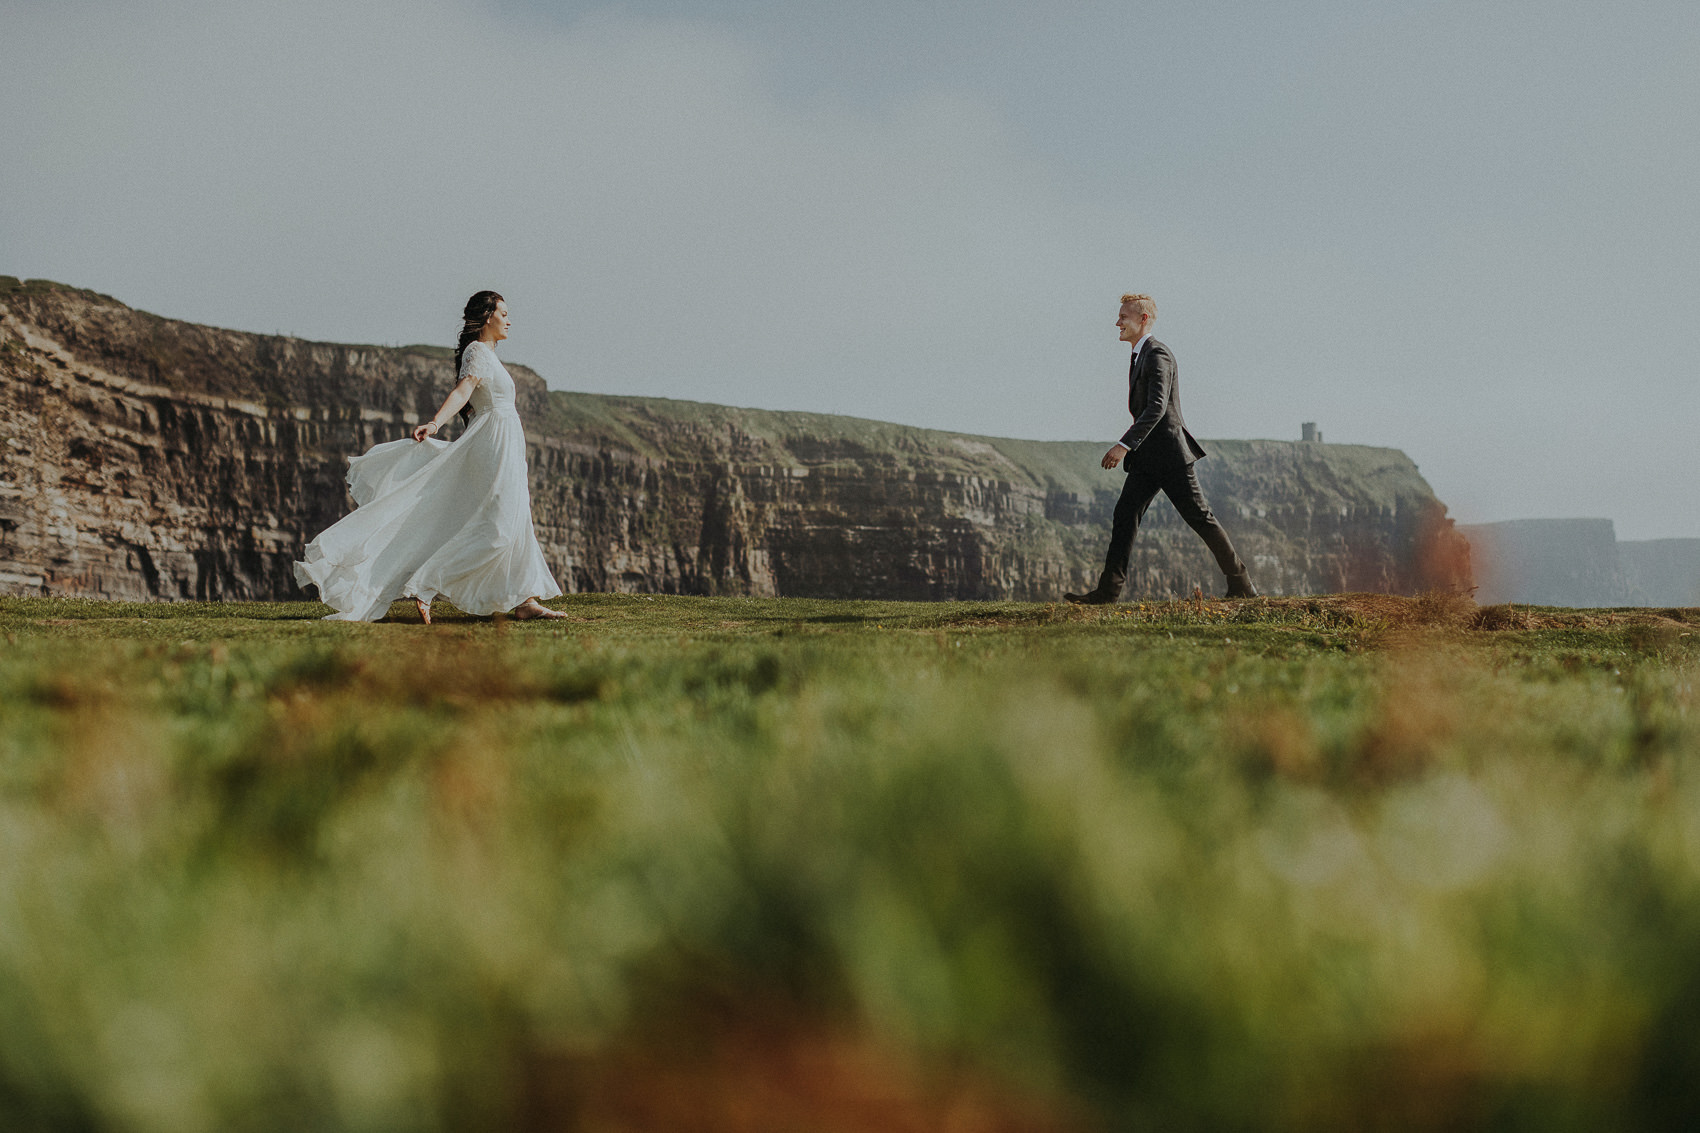 Irish Cliffs of Moher wedding Elopement shoot 679